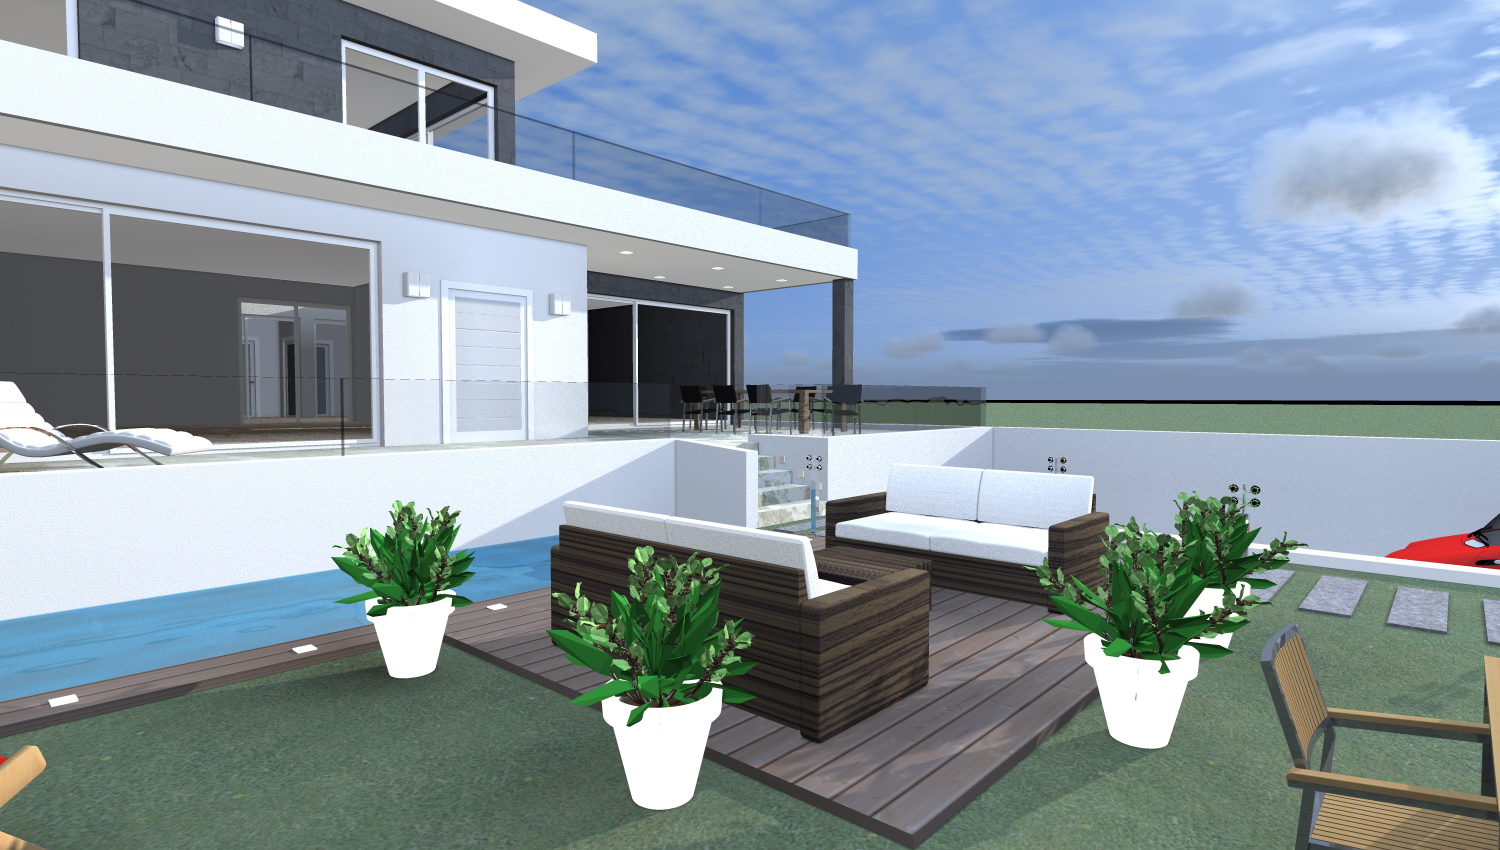 Esempi di progetti 3d di costruzione architettiamo for Casa moderna colori